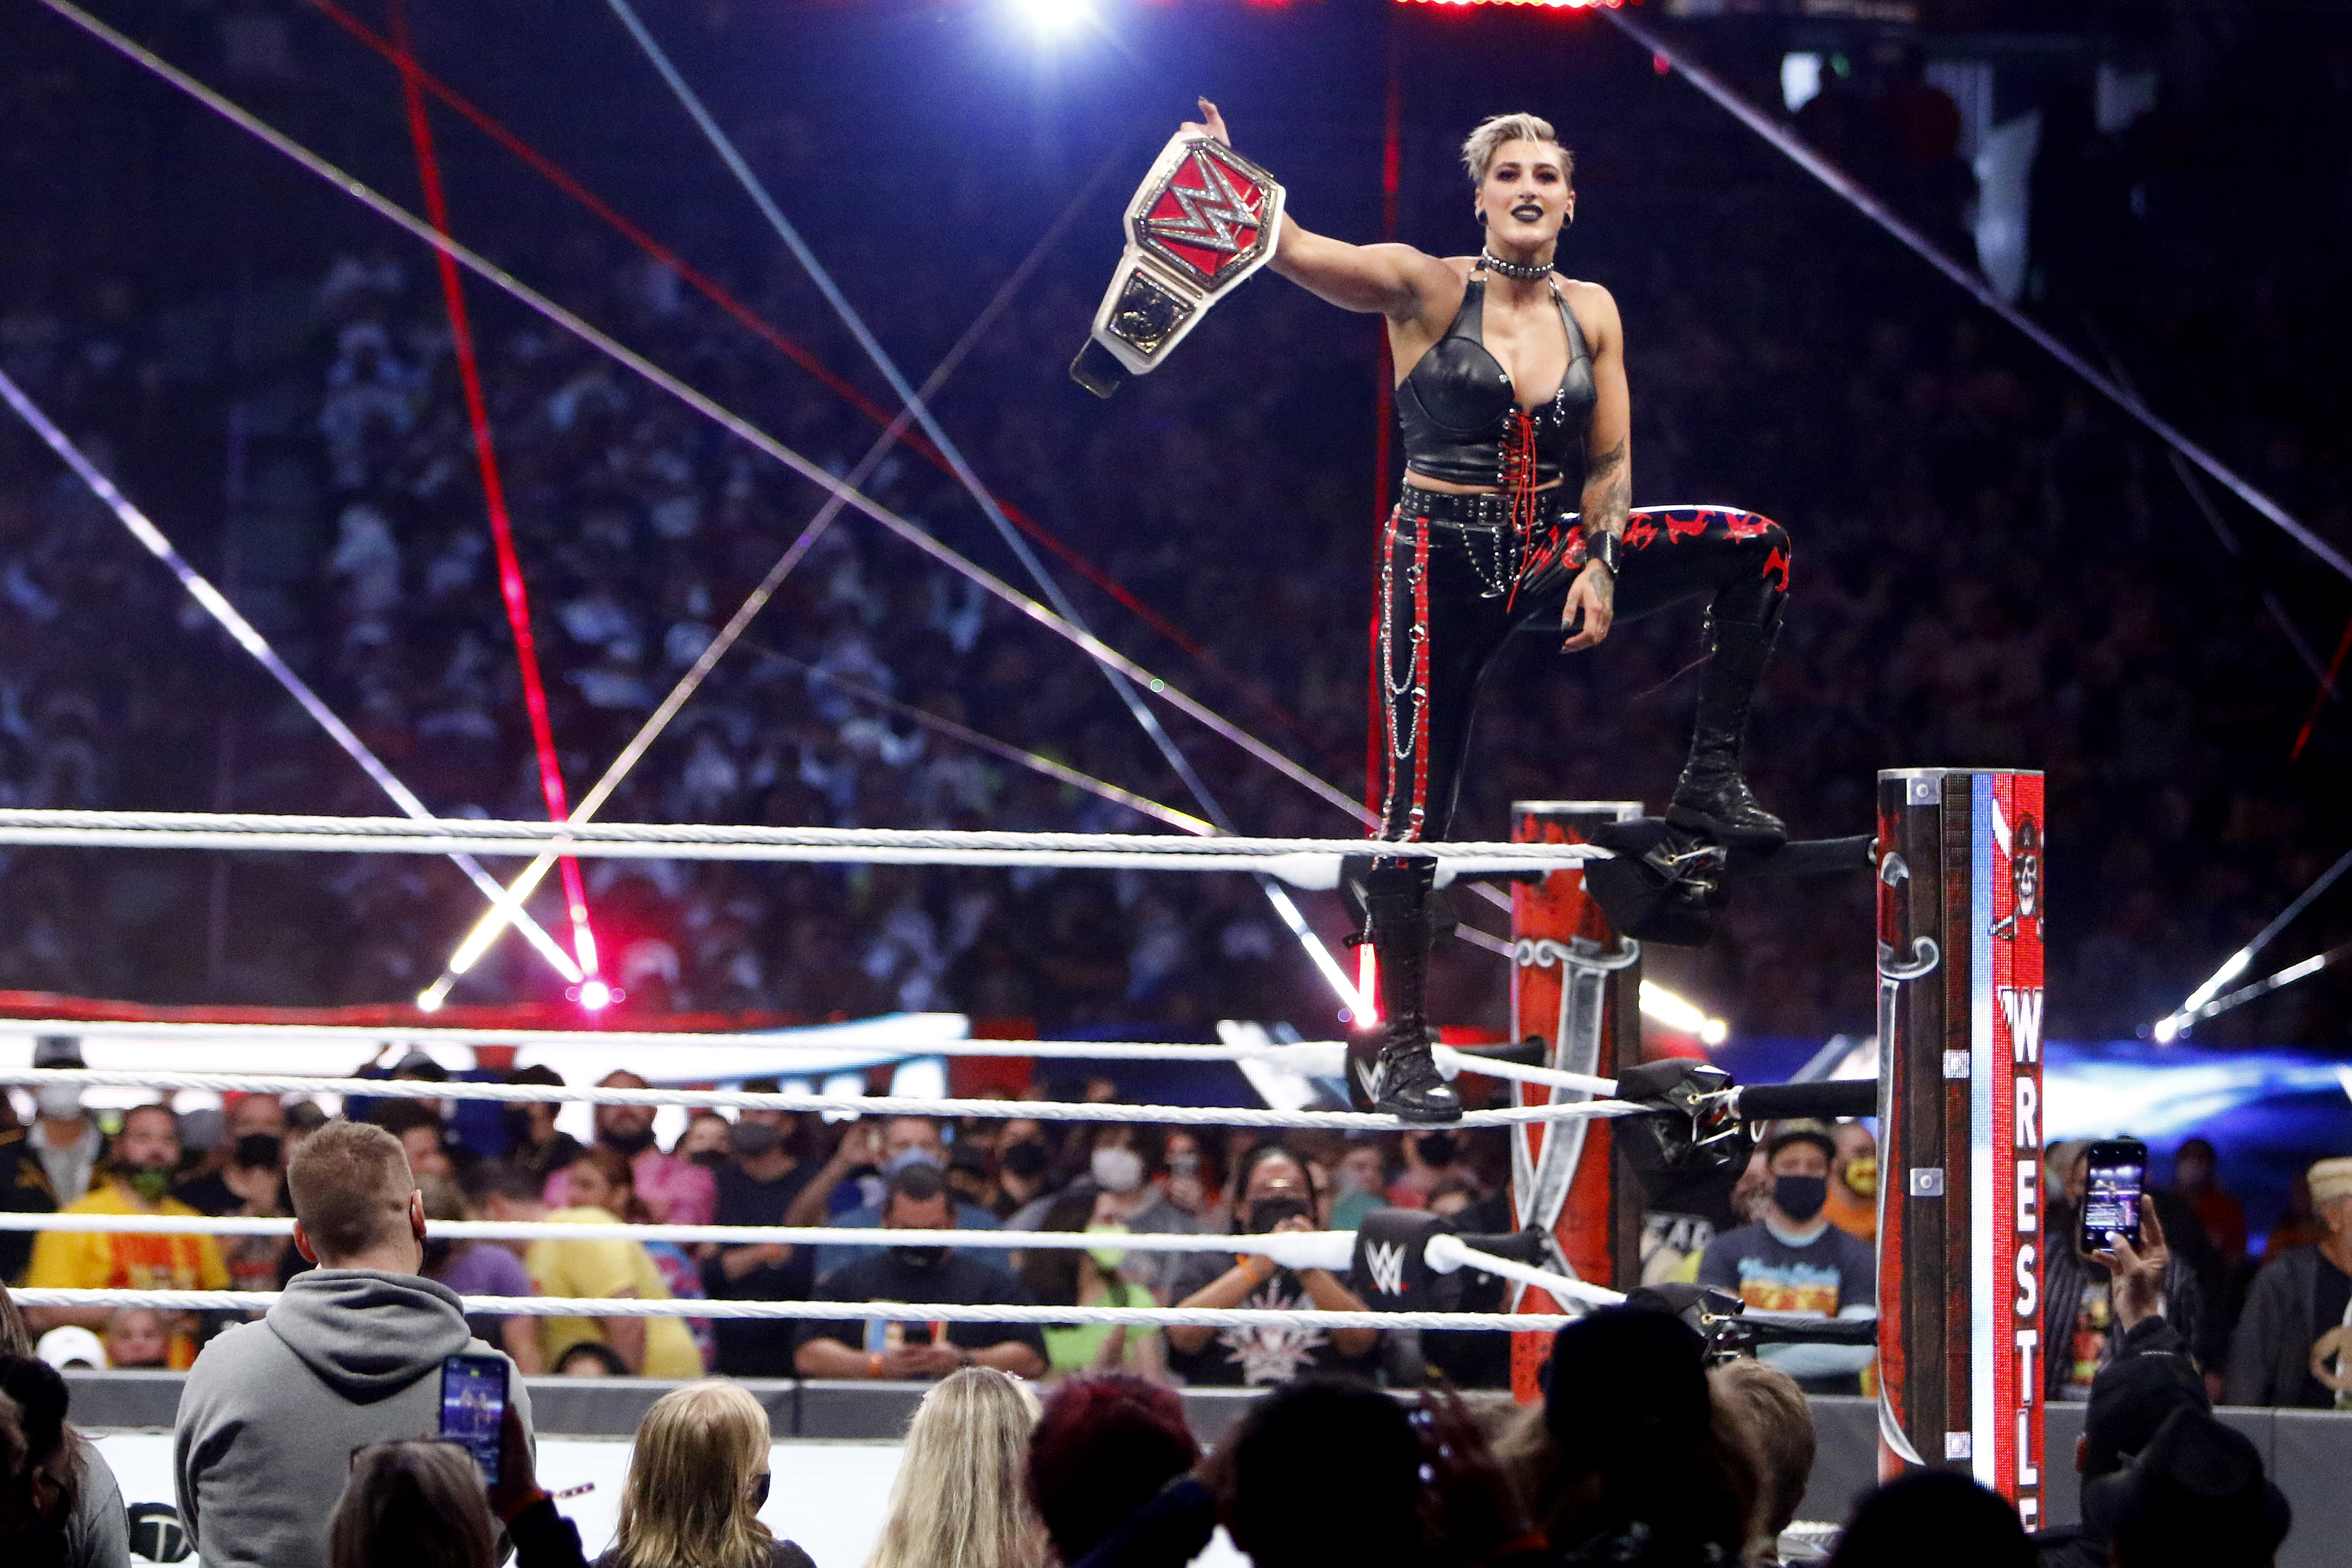 WrestleMania creates lasting memories for Tampa Bay, WWE